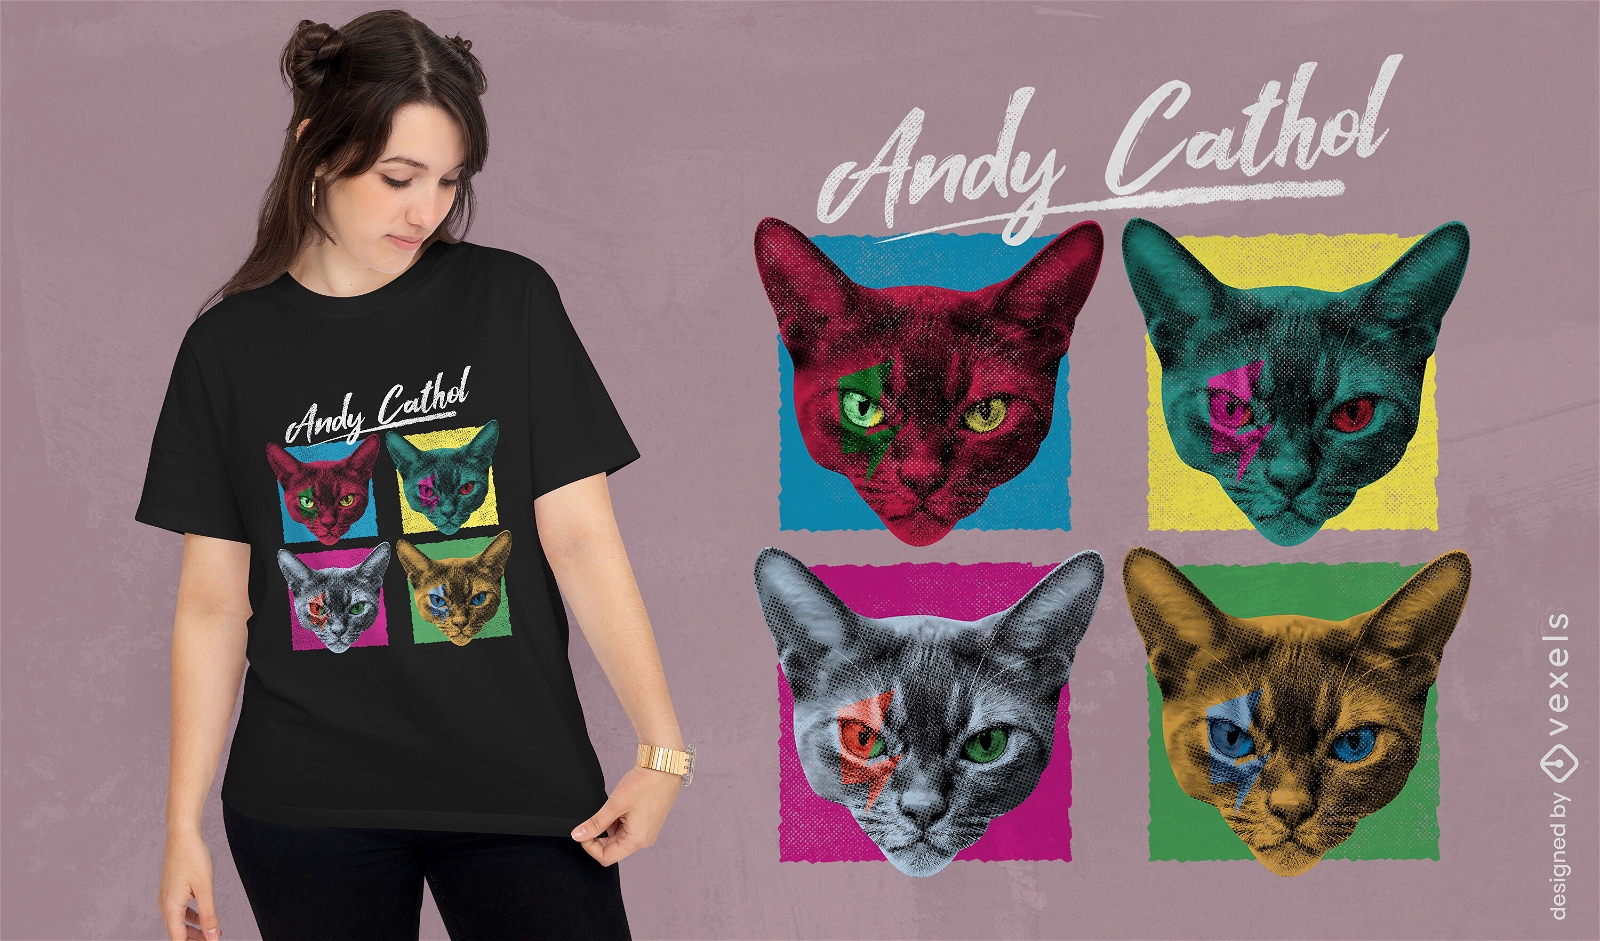 Gatos em t-shirt estilo paródia pop art psd